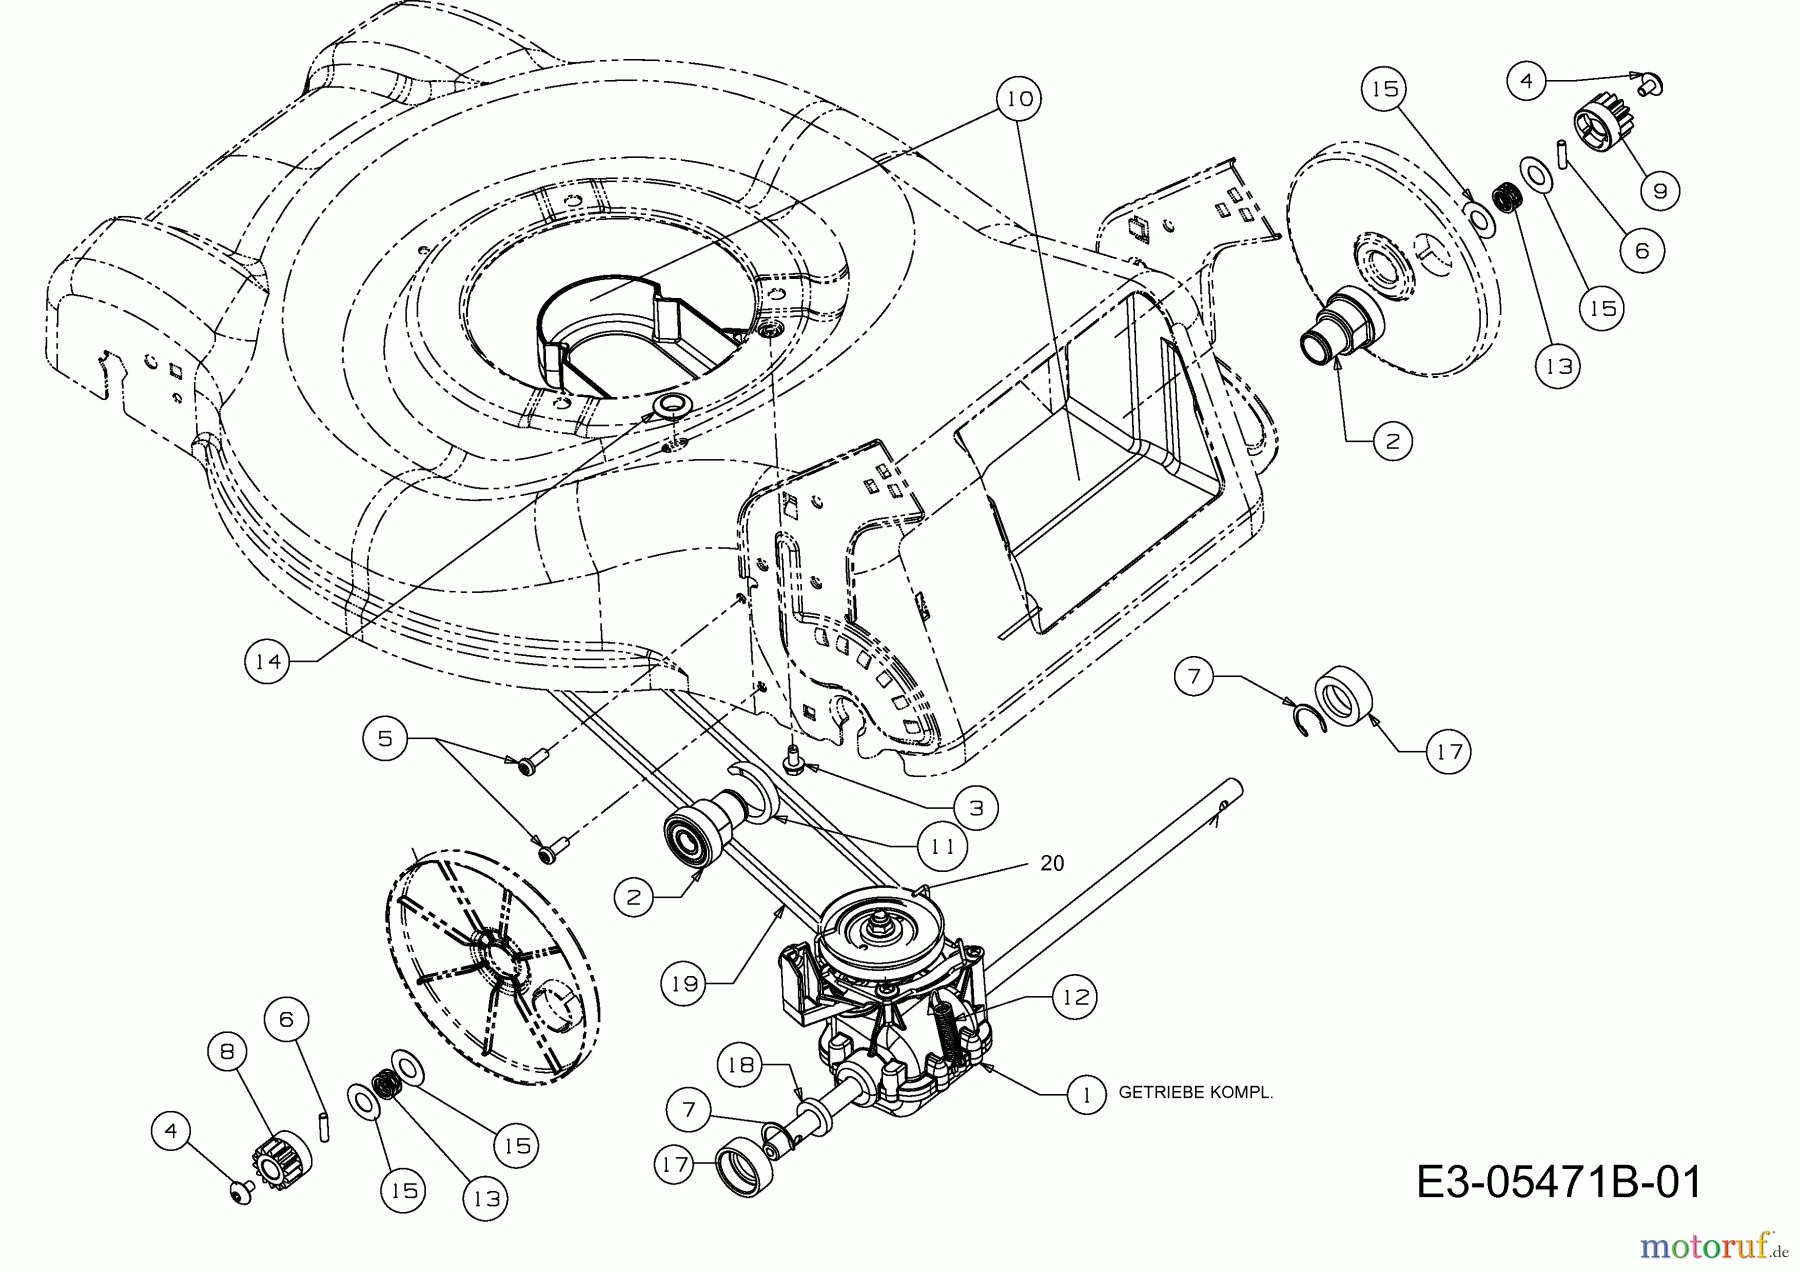  MTD Motormäher mit Antrieb MTD 46 BS 12A-J75B600  (2015) Getriebe